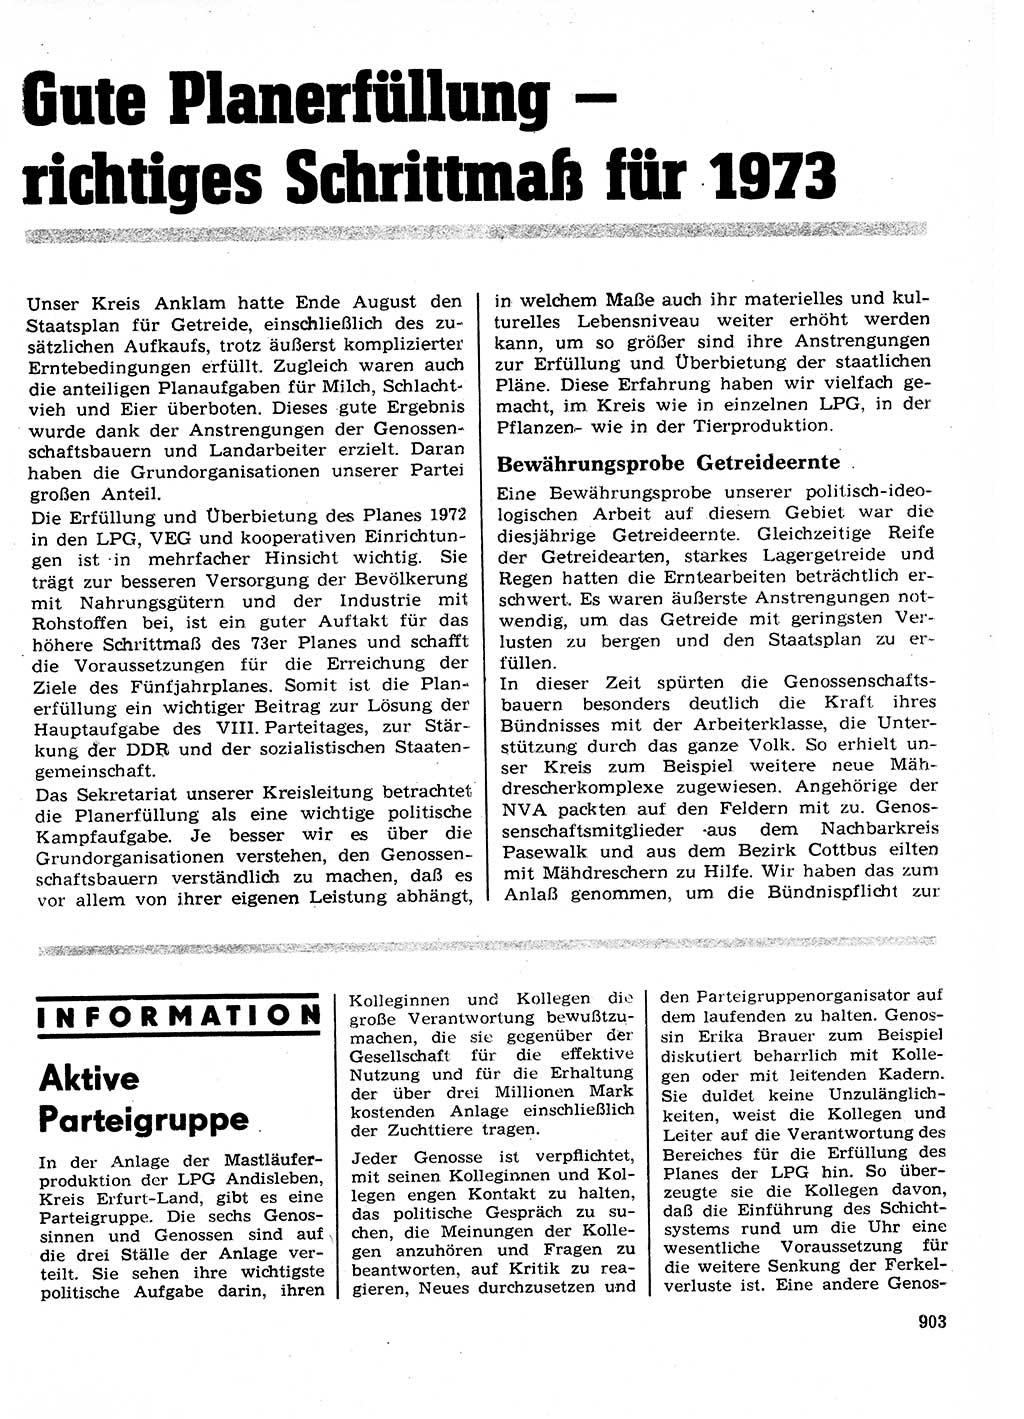 Neuer Weg (NW), Organ des Zentralkomitees (ZK) der SED (Sozialistische Einheitspartei Deutschlands) für Fragen des Parteilebens, 27. Jahrgang [Deutsche Demokratische Republik (DDR)] 1972, Seite 903 (NW ZK SED DDR 1972, S. 903)